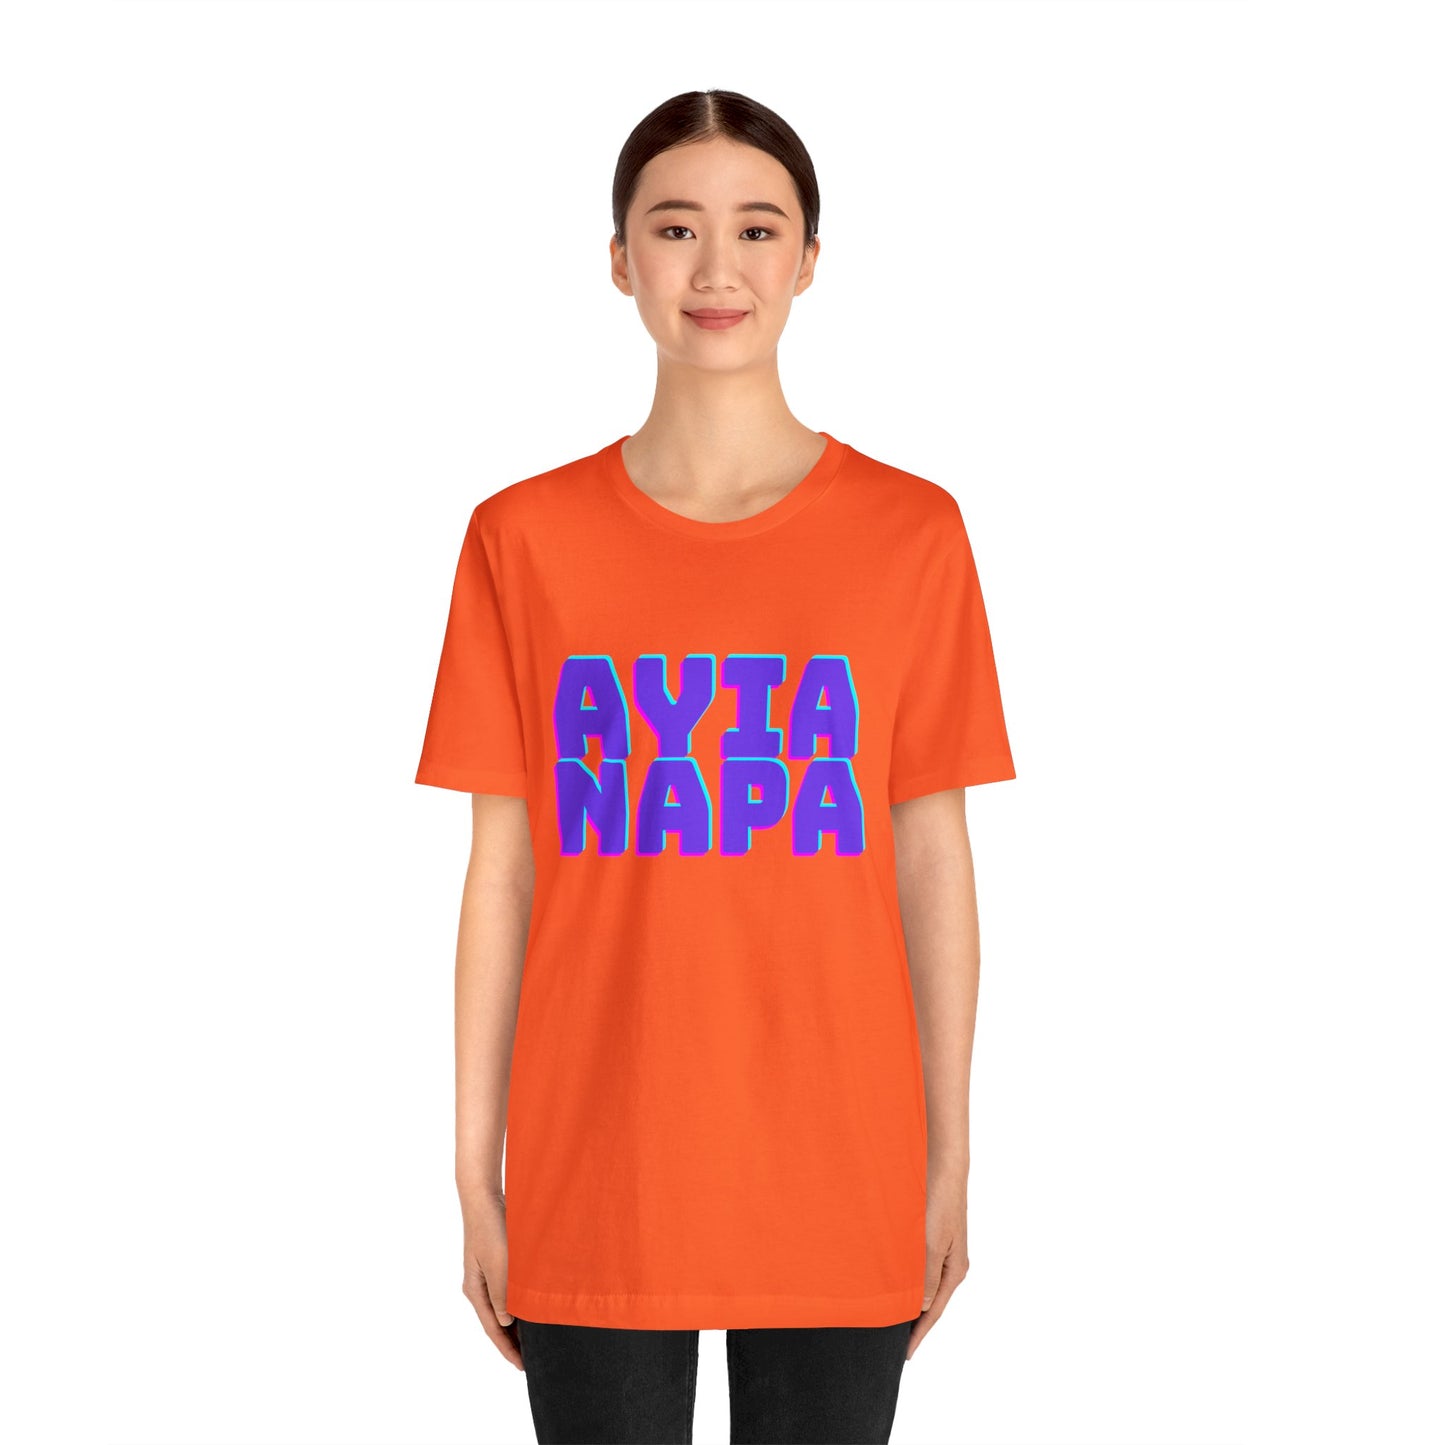 Ayia Napa Cyprus - Unisex Jersey Short Sleeve Tee